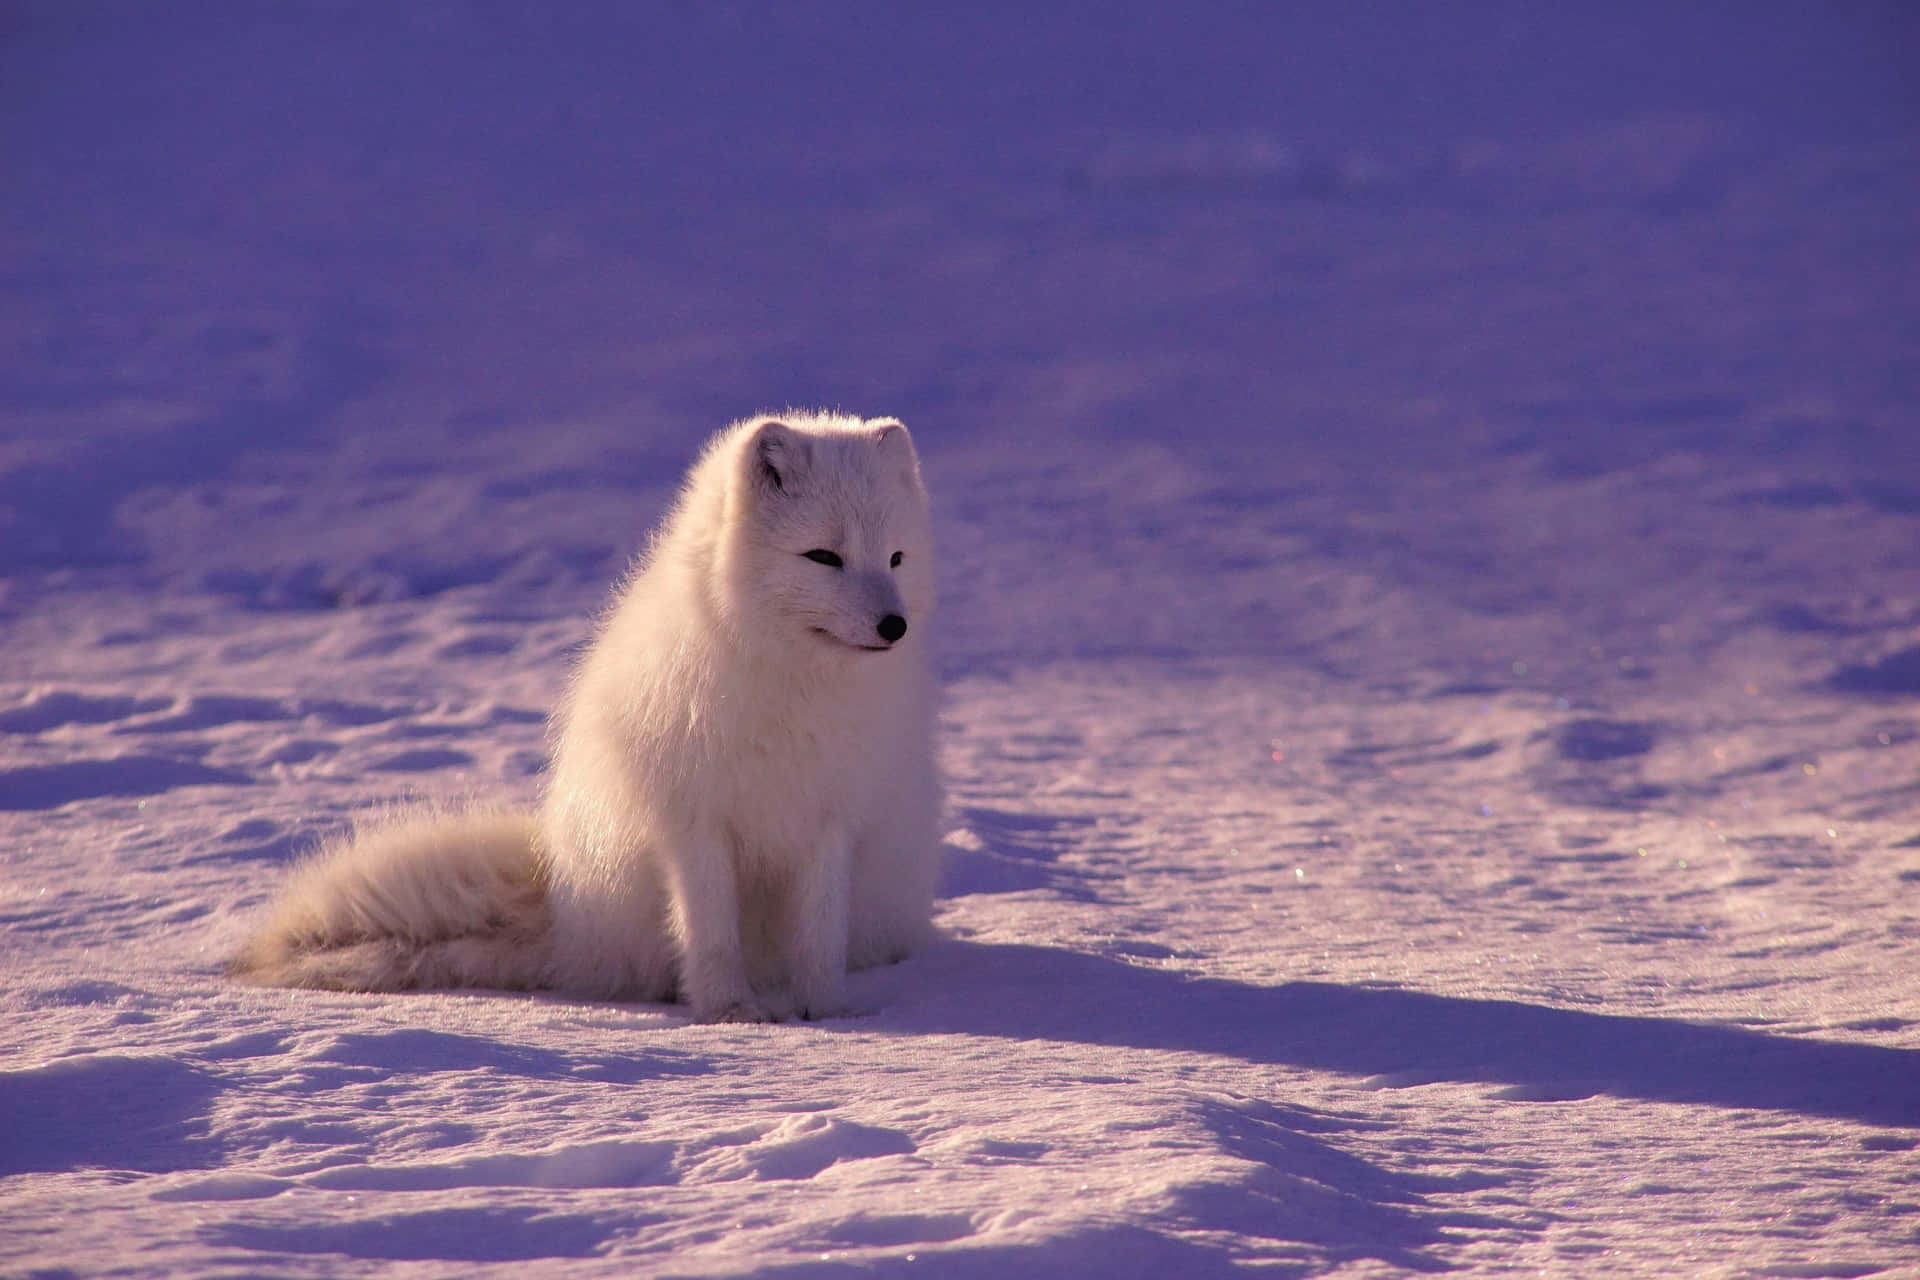 A Closeup of an Arctic Fox